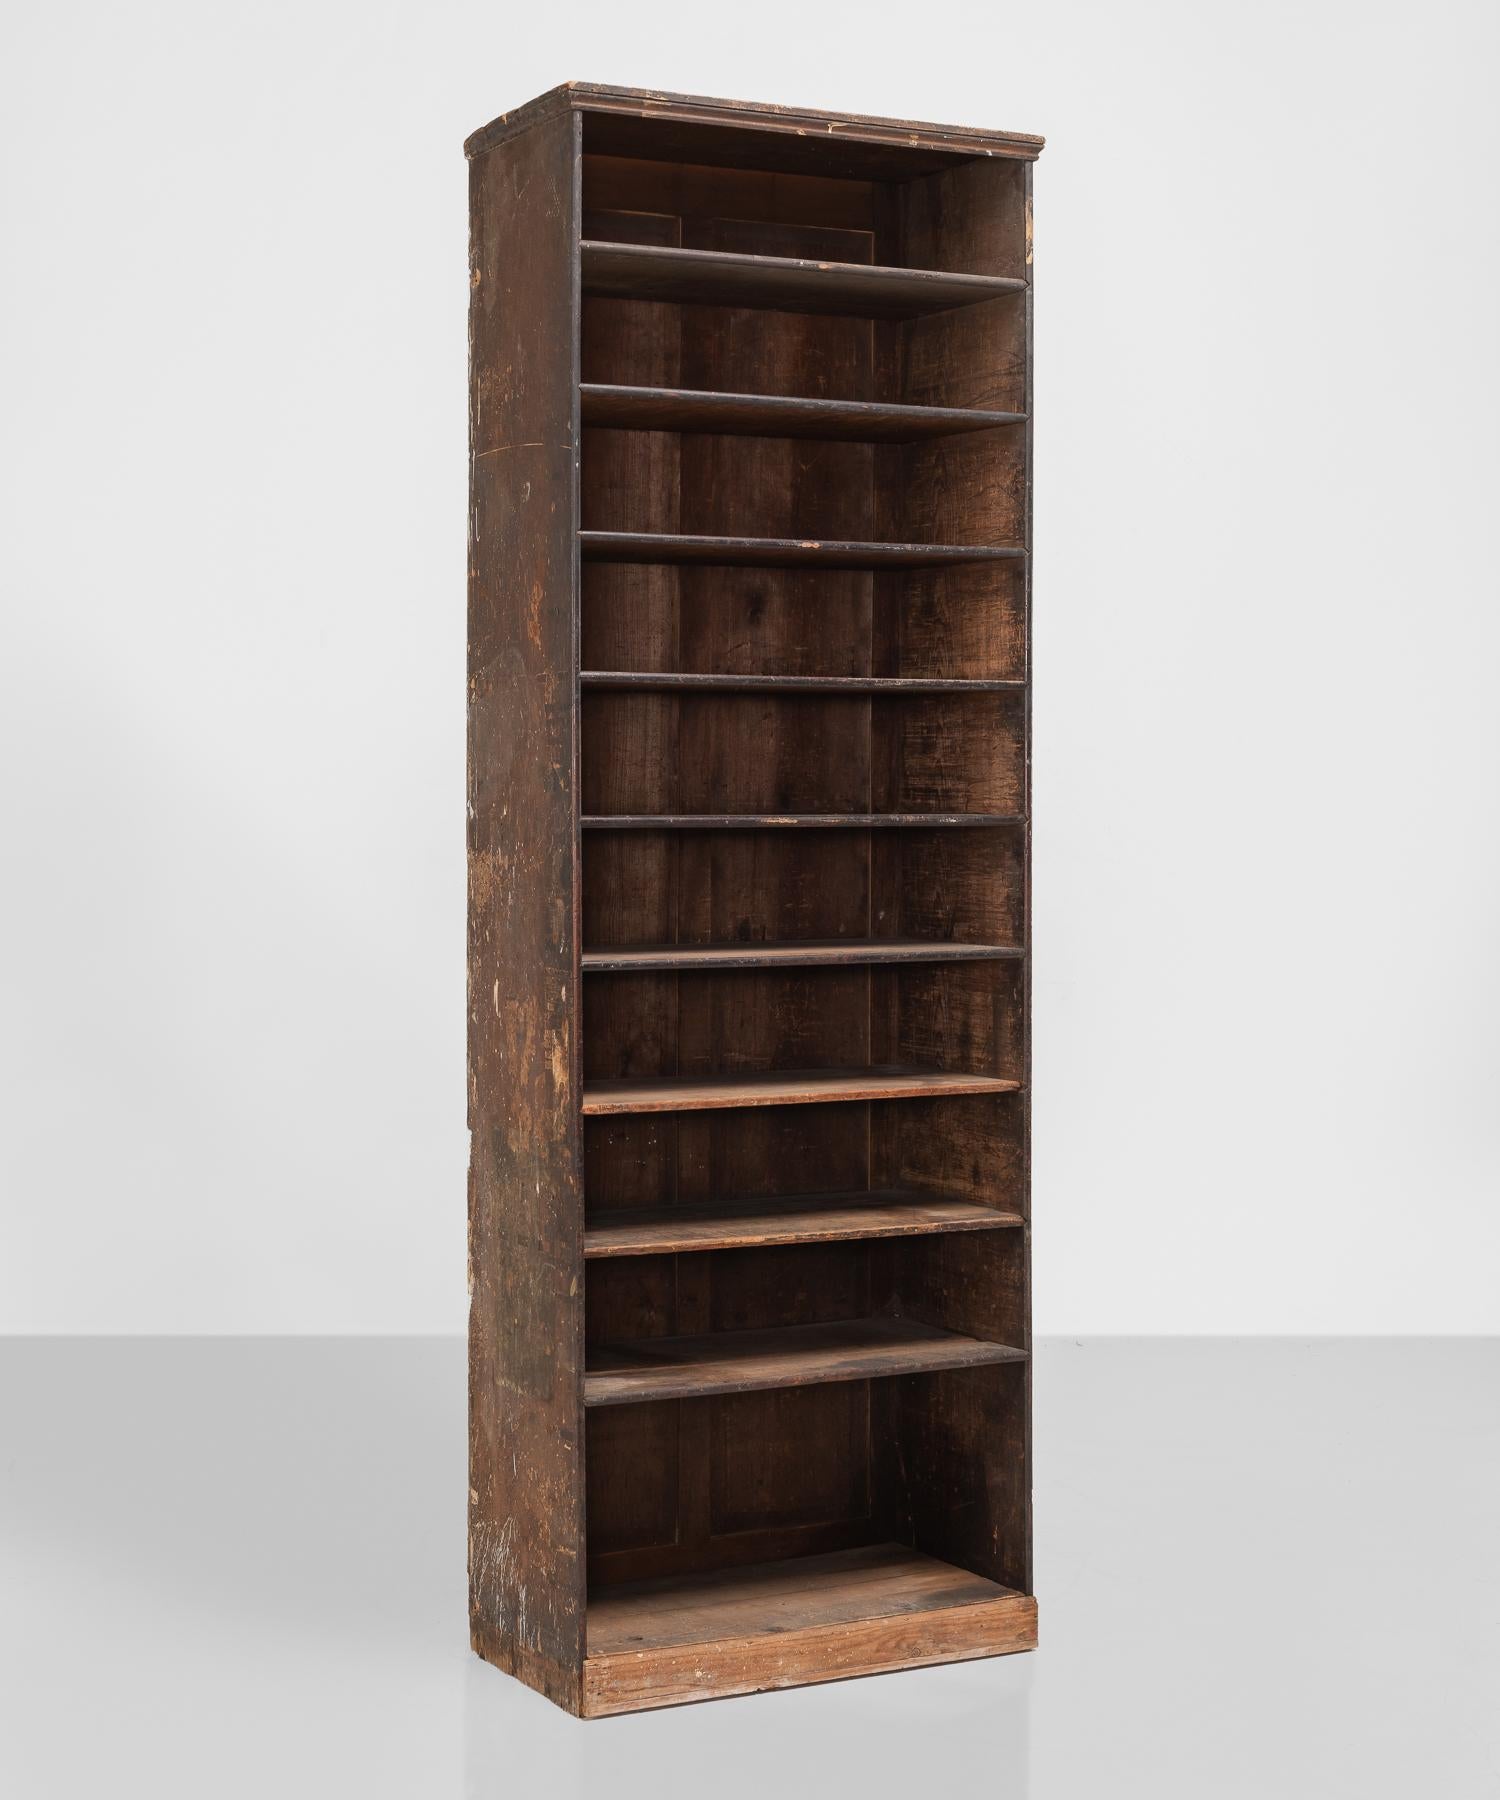 Pine shop shelving unit, circa 1900.

Panelled back with original ebonised shelf fronts.